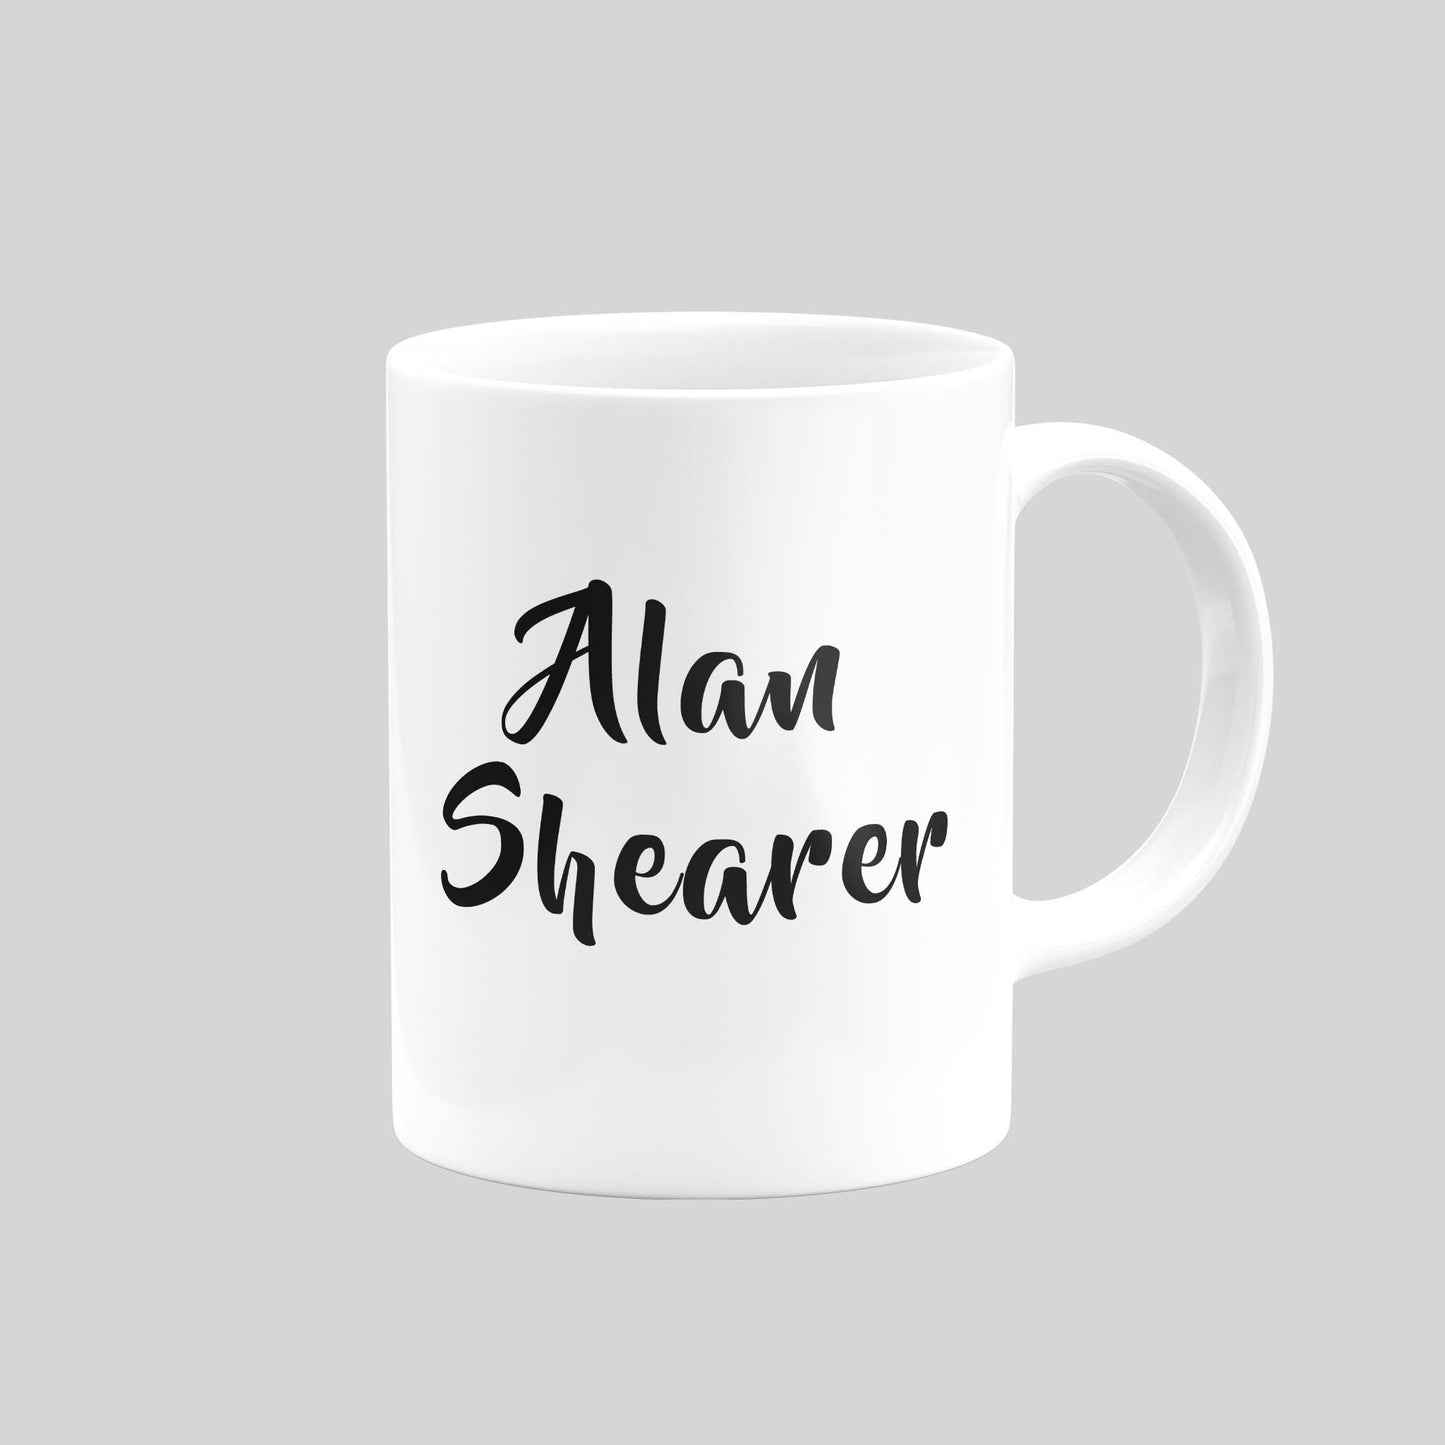 Alan Shearer Mug